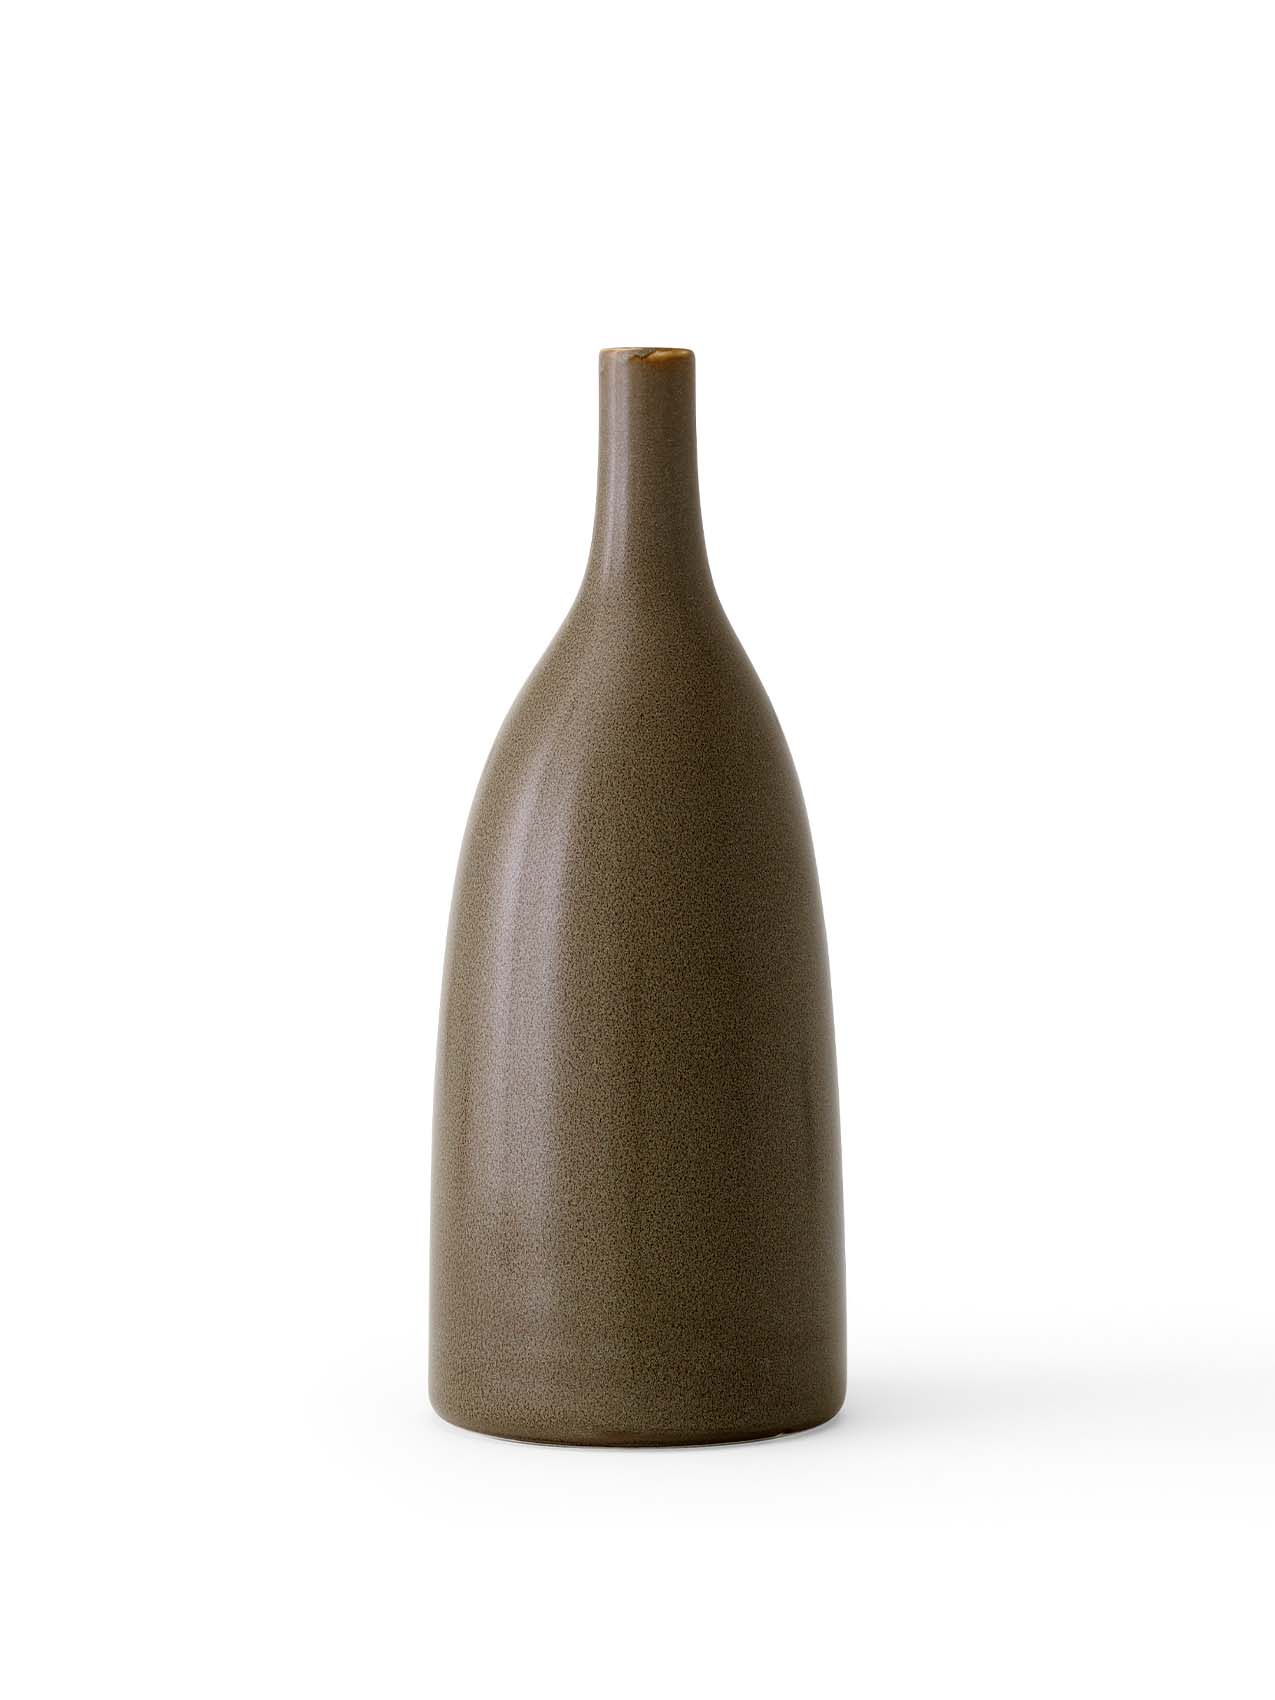 Strandgade Stem Vase  Elegant stoneware vase by Mentze Ottenstein